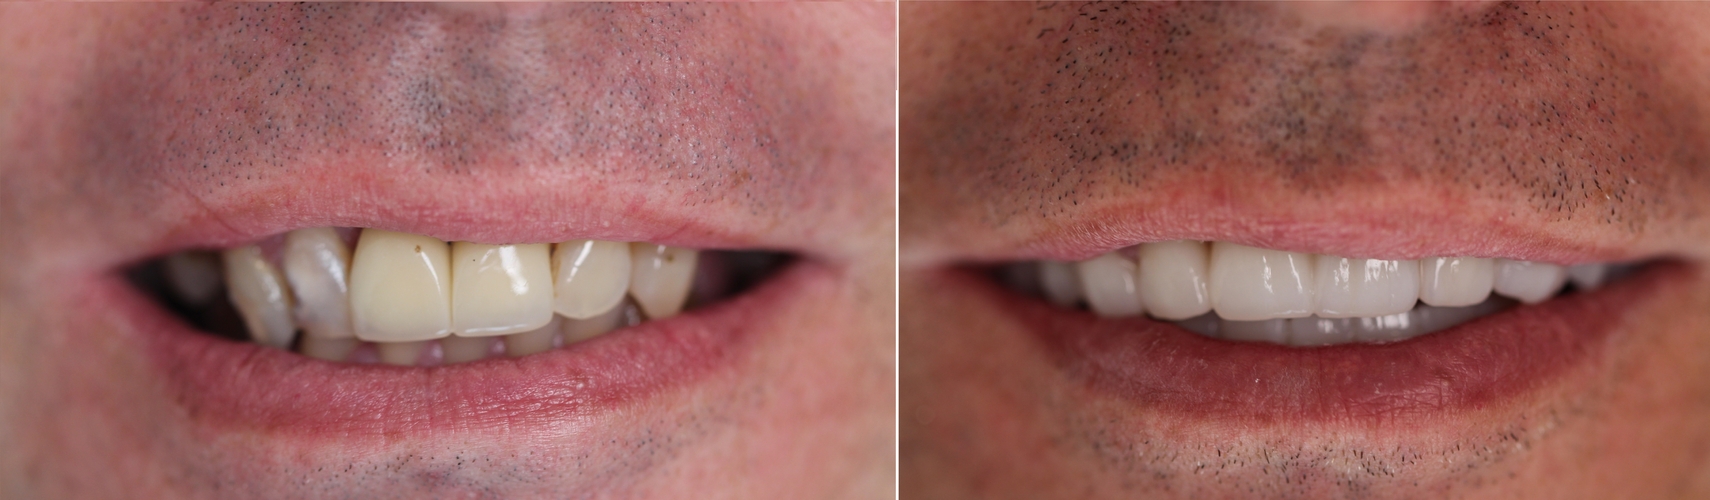 porównanie zębów przed i po